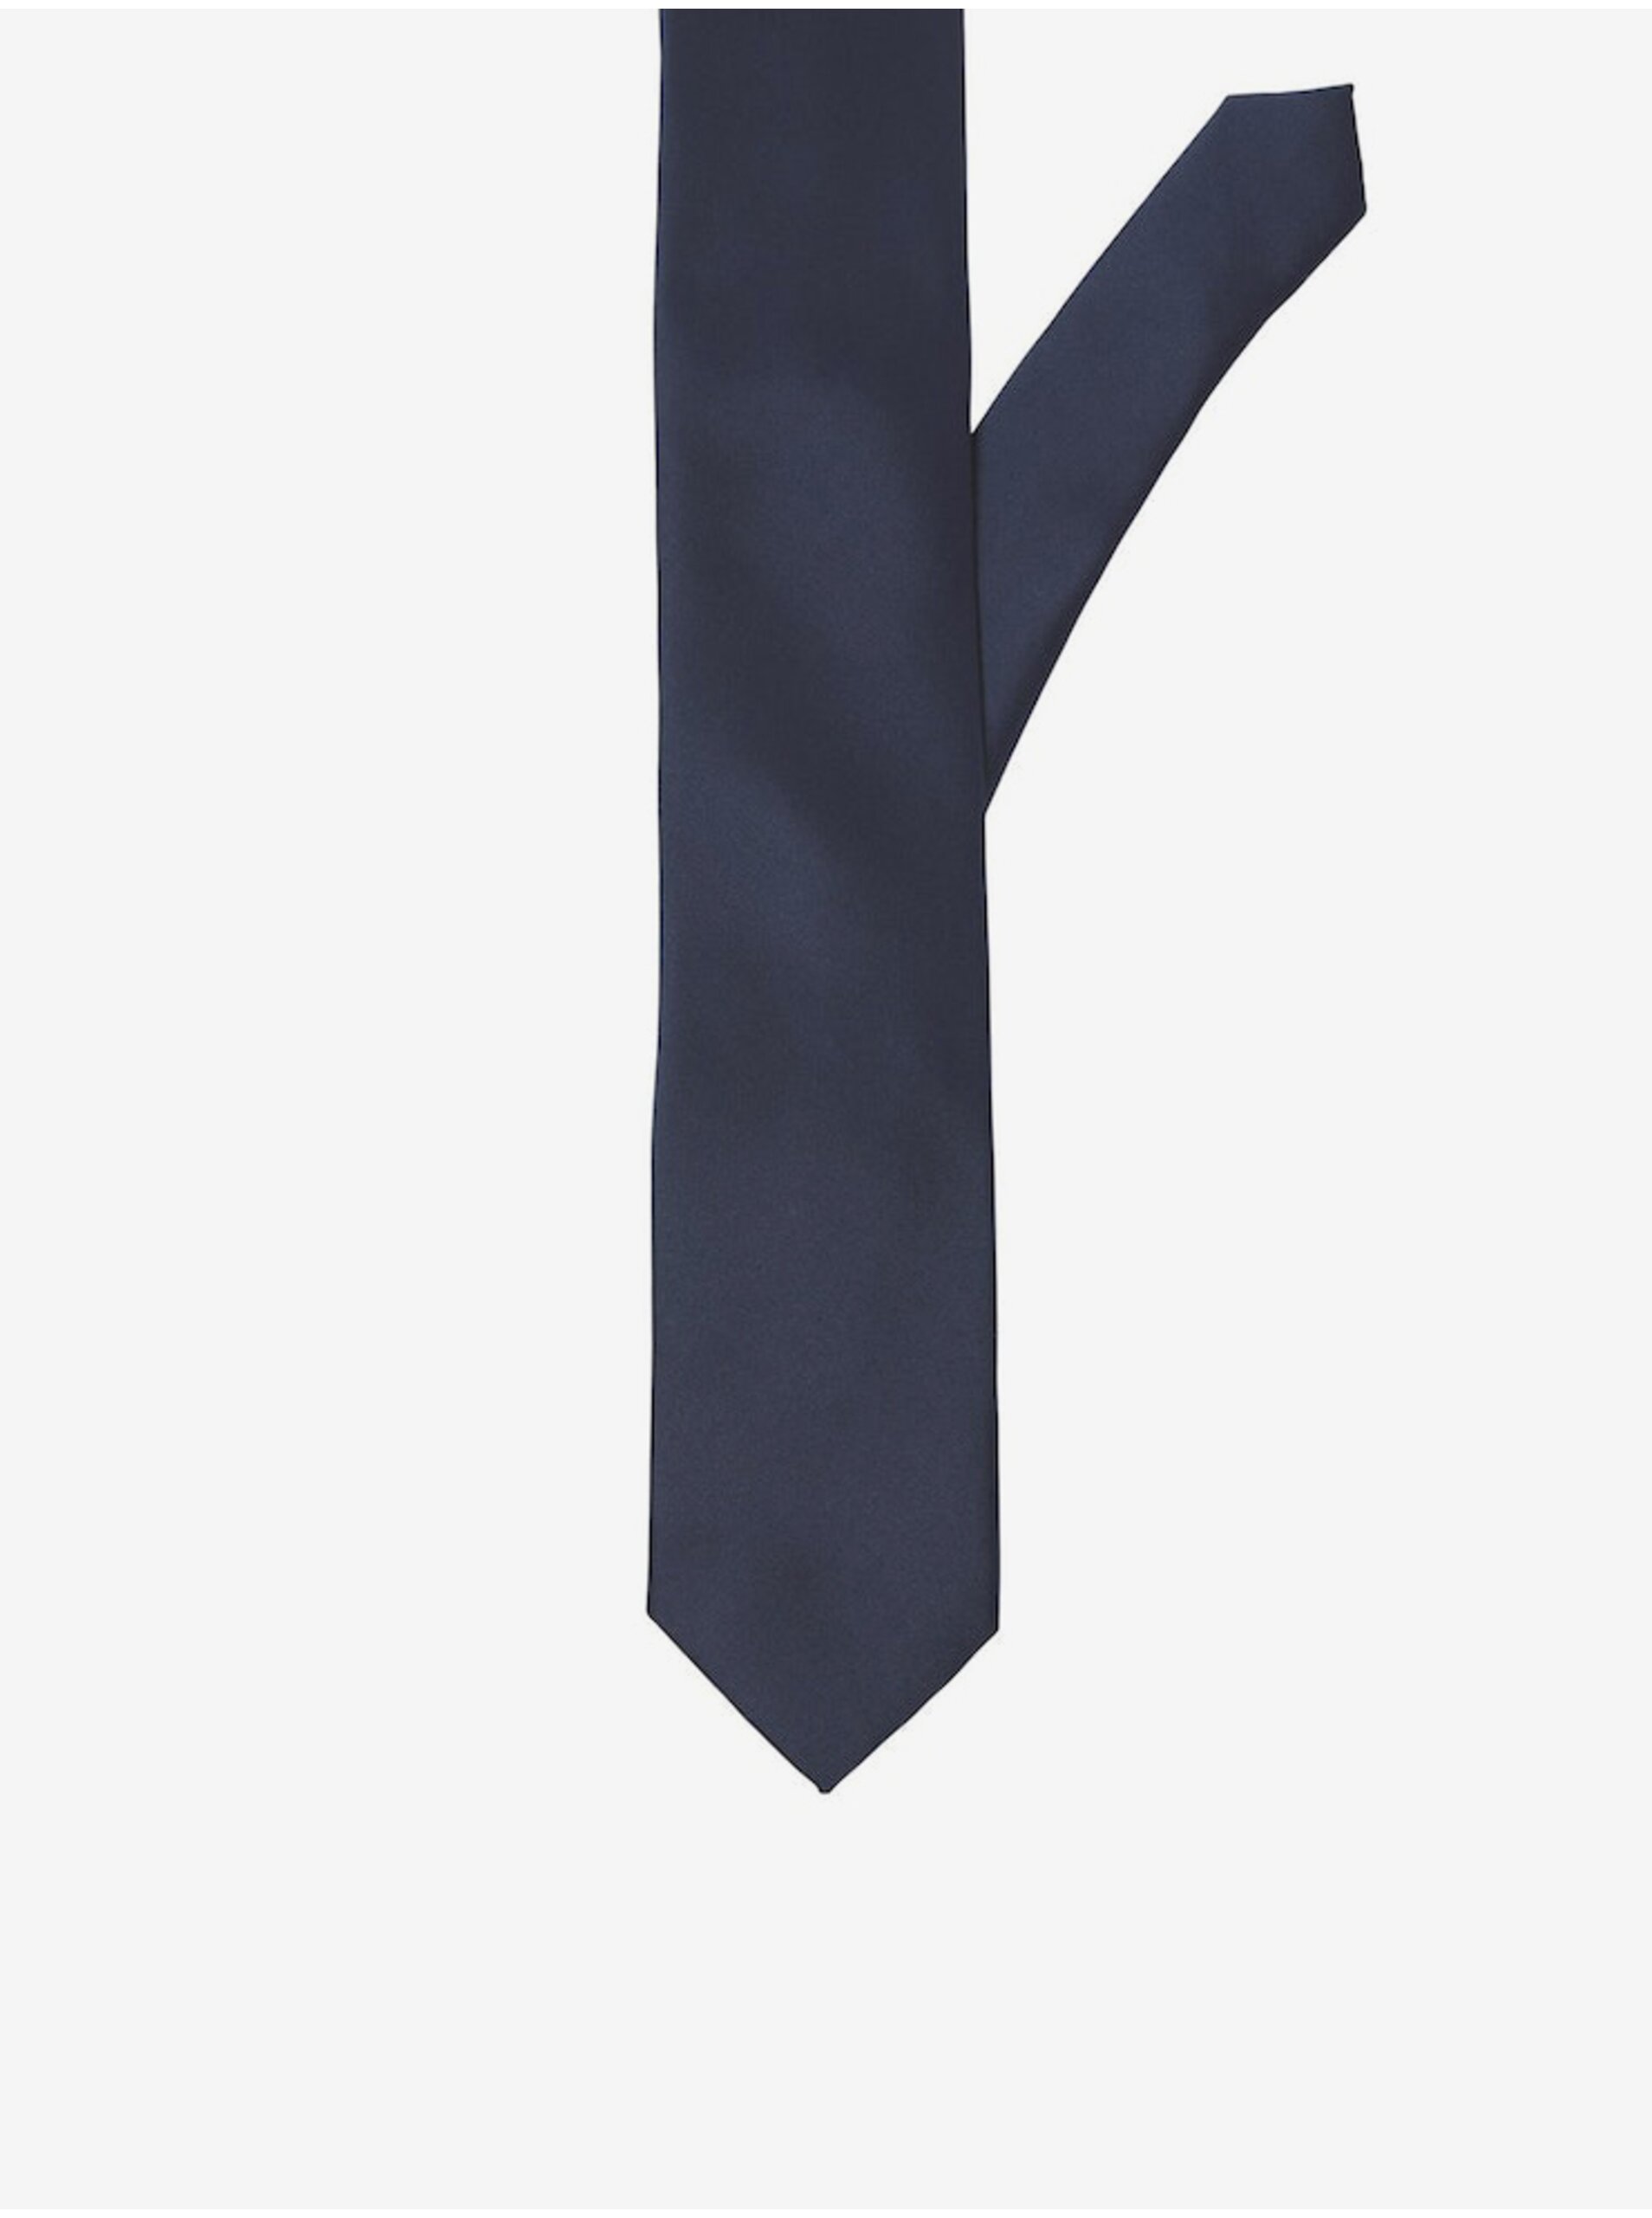 Lacno Tmavomodrá kravata Jack & Jones Solid